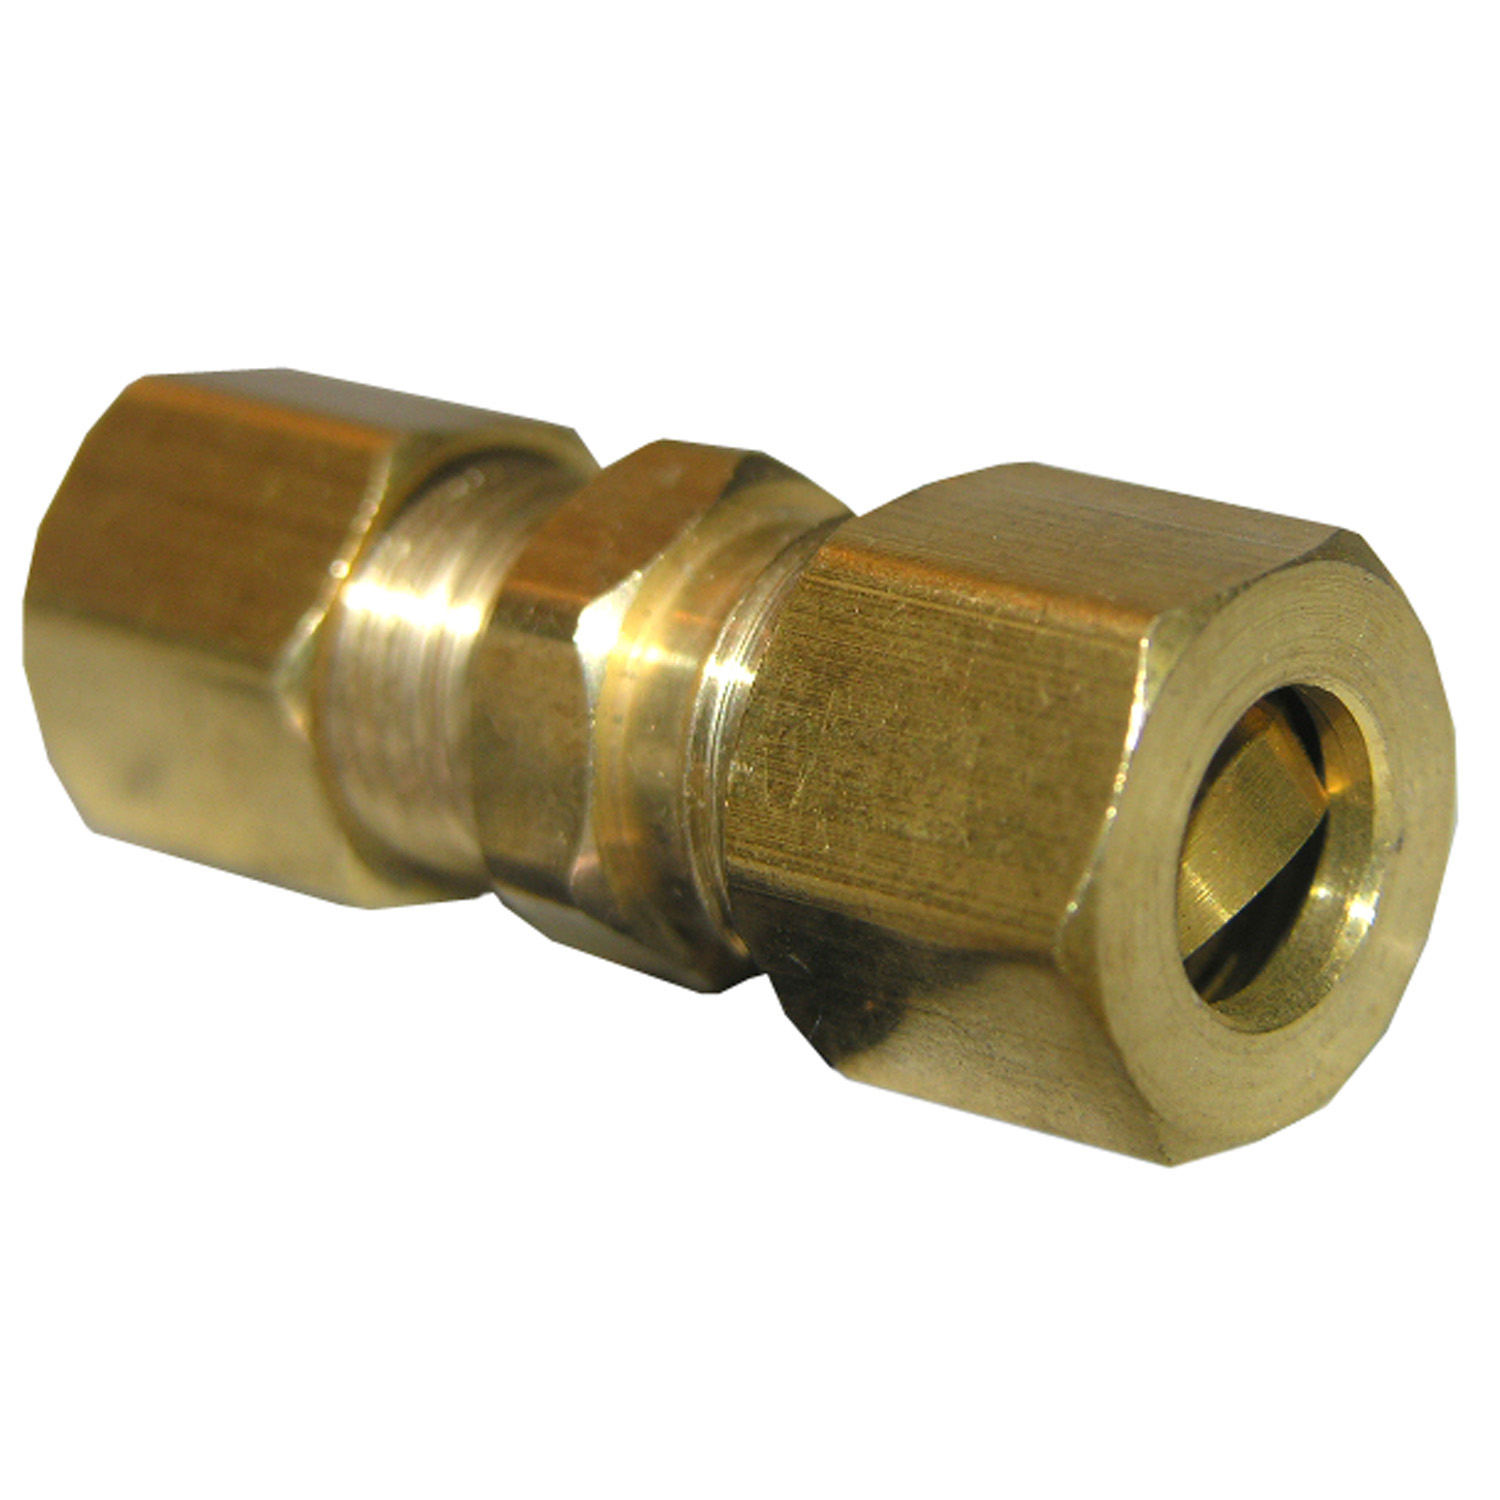 17-6207 Pipe Union, 3/16 in, Compression, Brass, 100 psi Pressure